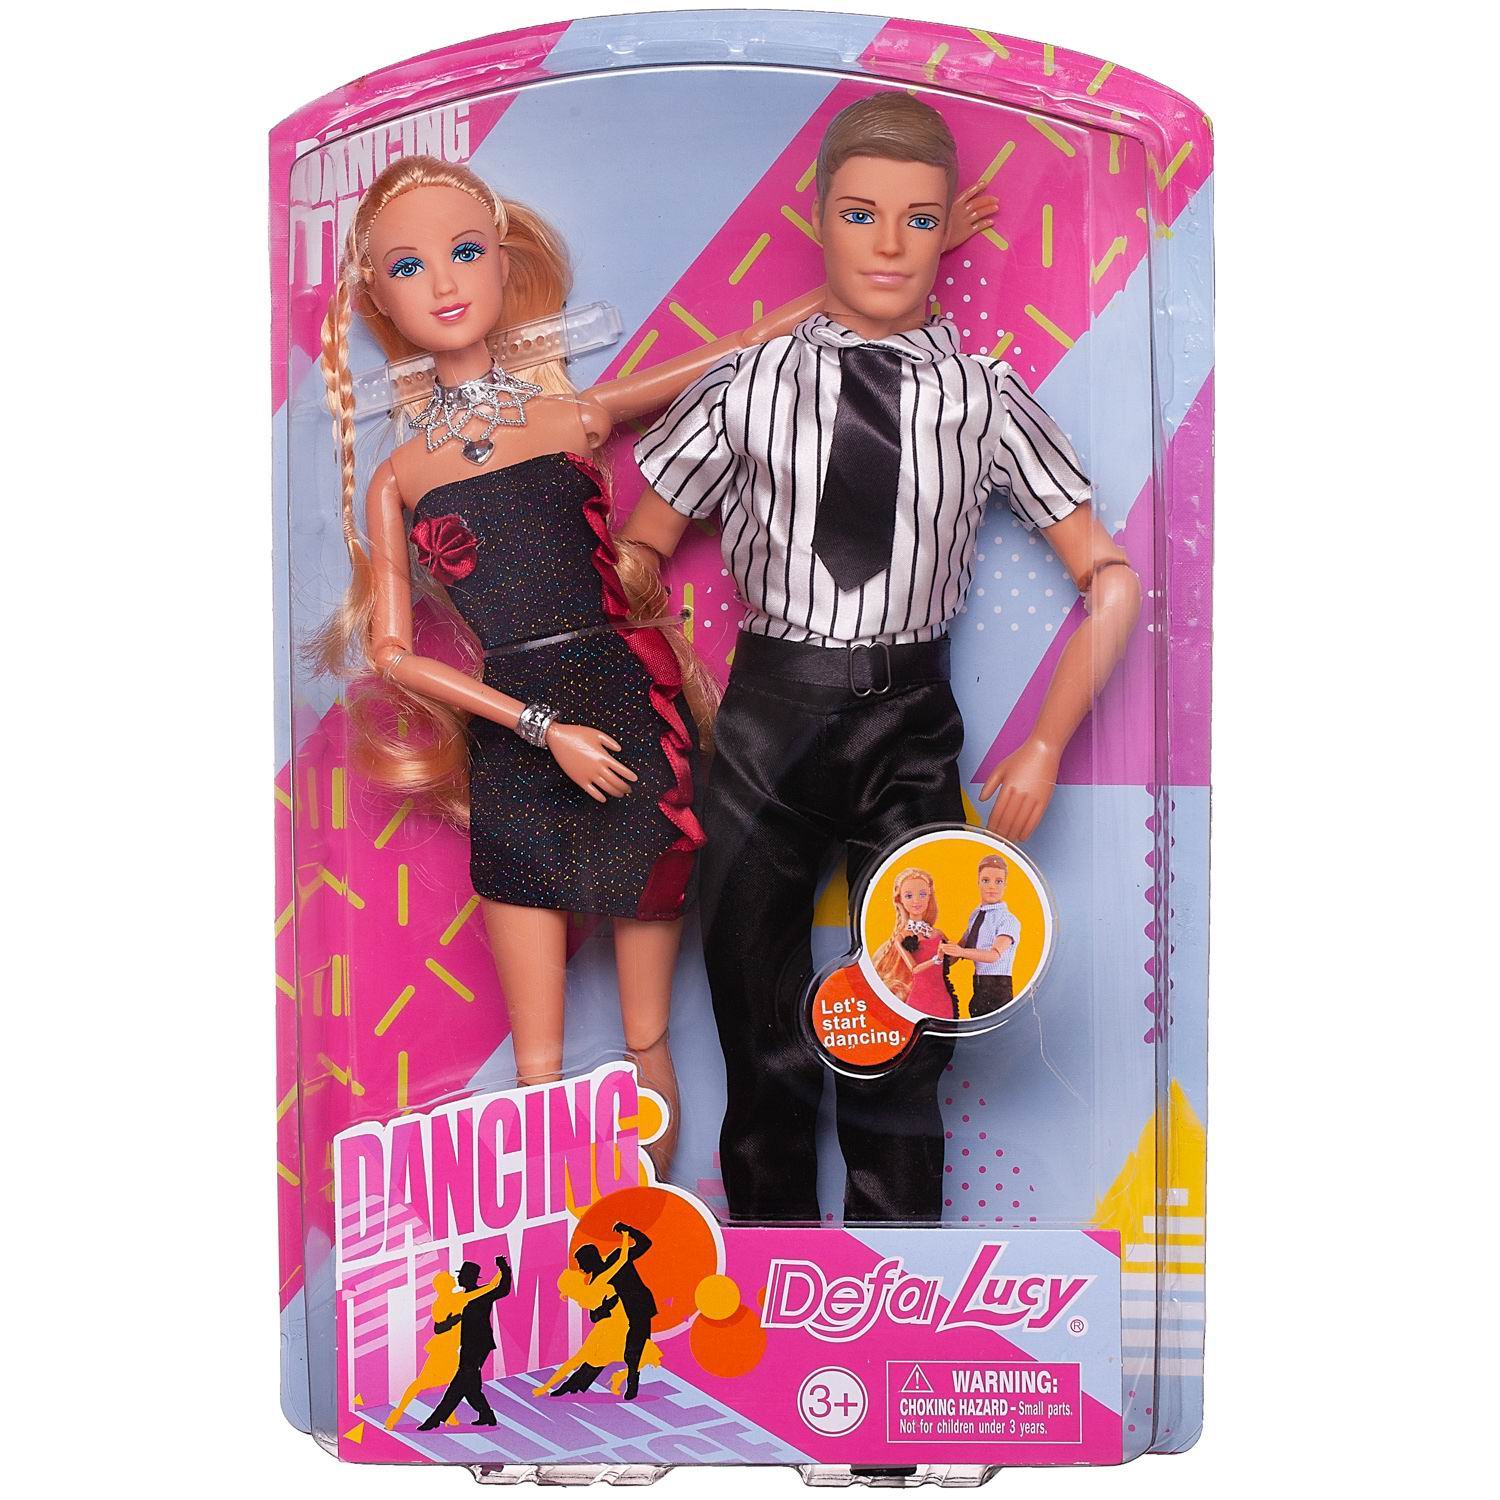 Игровой набор Куклы Defa Lucy&Kevin Танцевальная пара: девушка и юноша, 29 и 30 см юноша по сердцу божьему